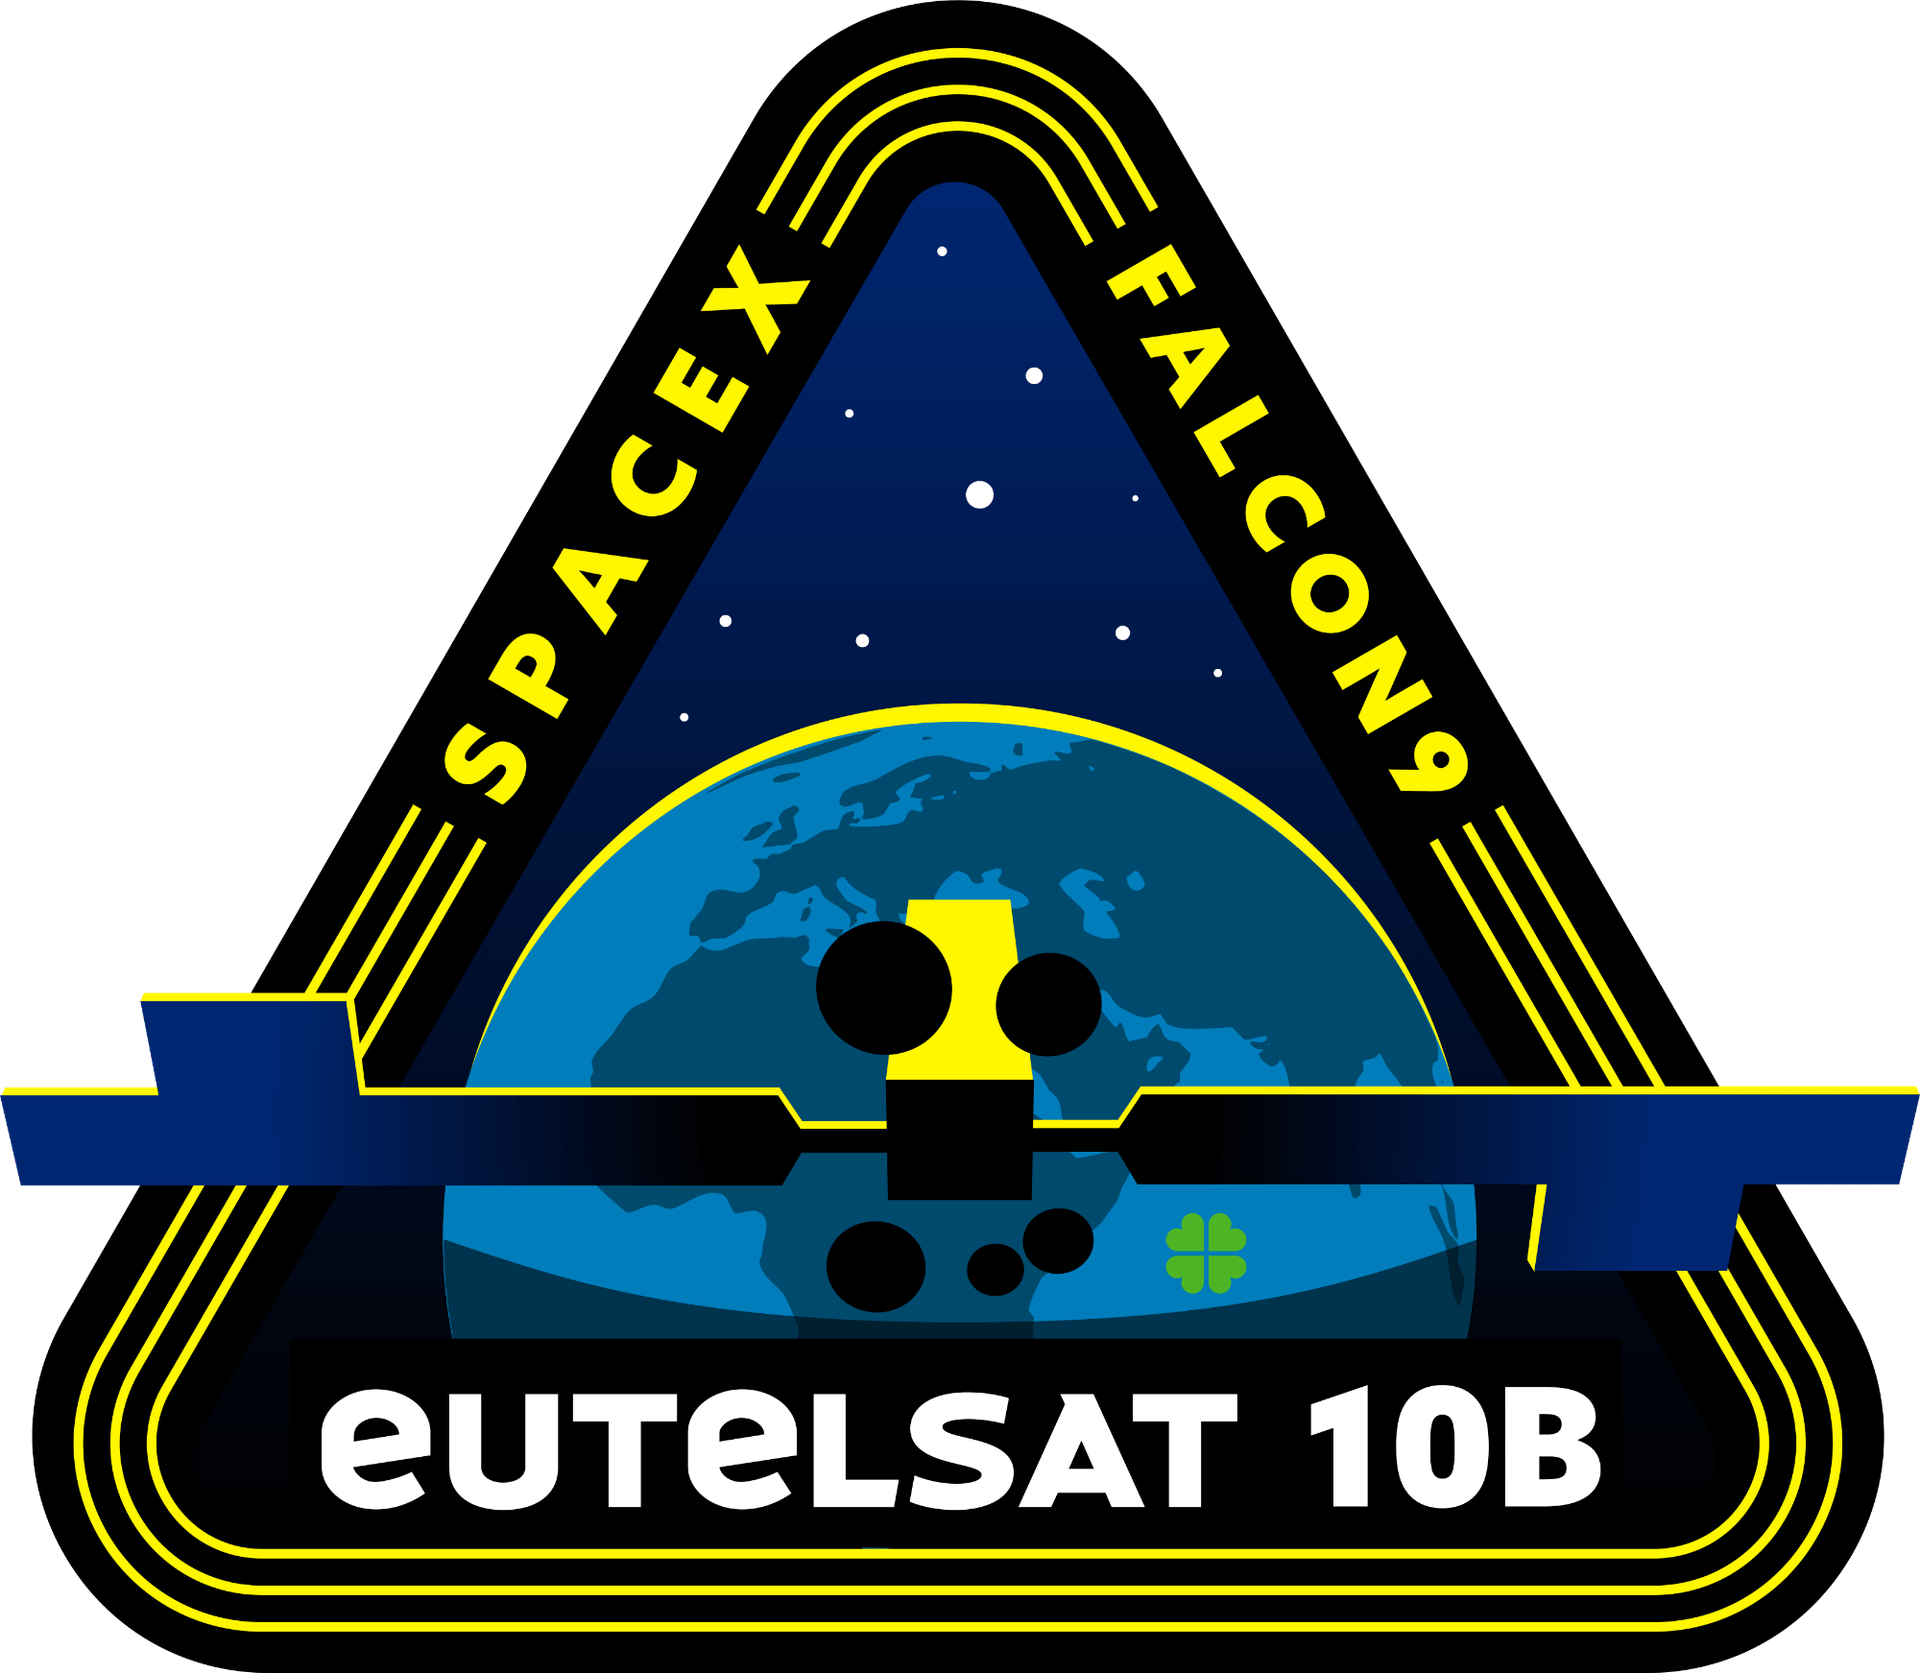 Mission patch for Eutelsat 10B